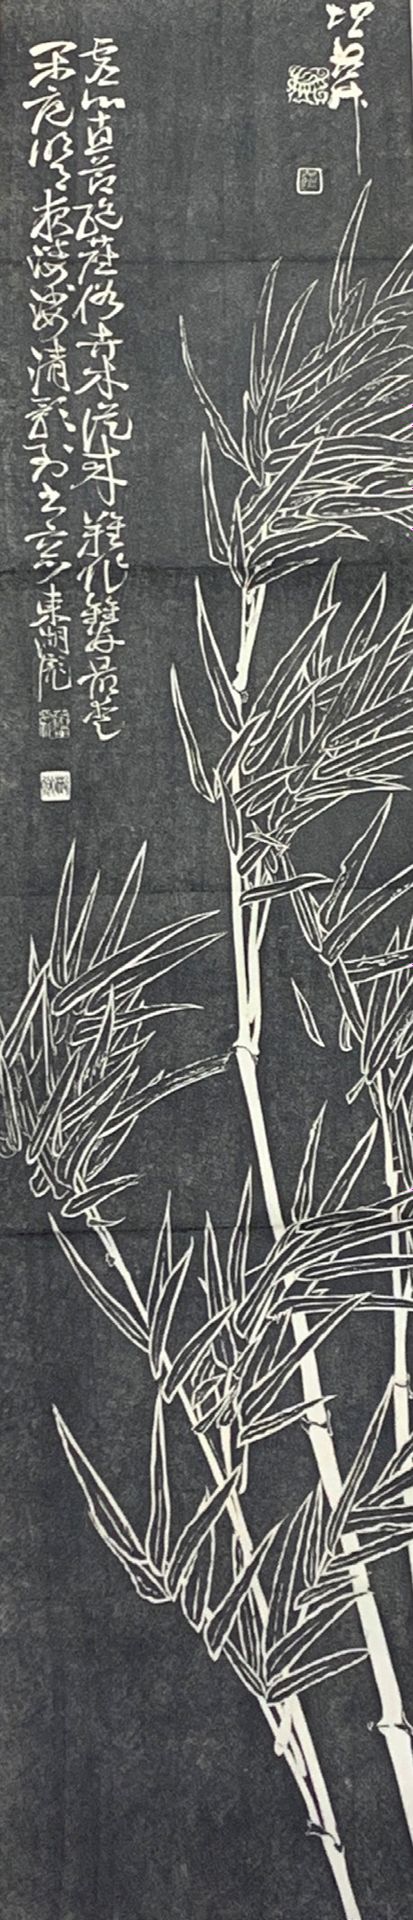 JAPON Stampa Kakemono.
Stampa nera su carta che mostra tre bambù con iscrizioni
&hellip;